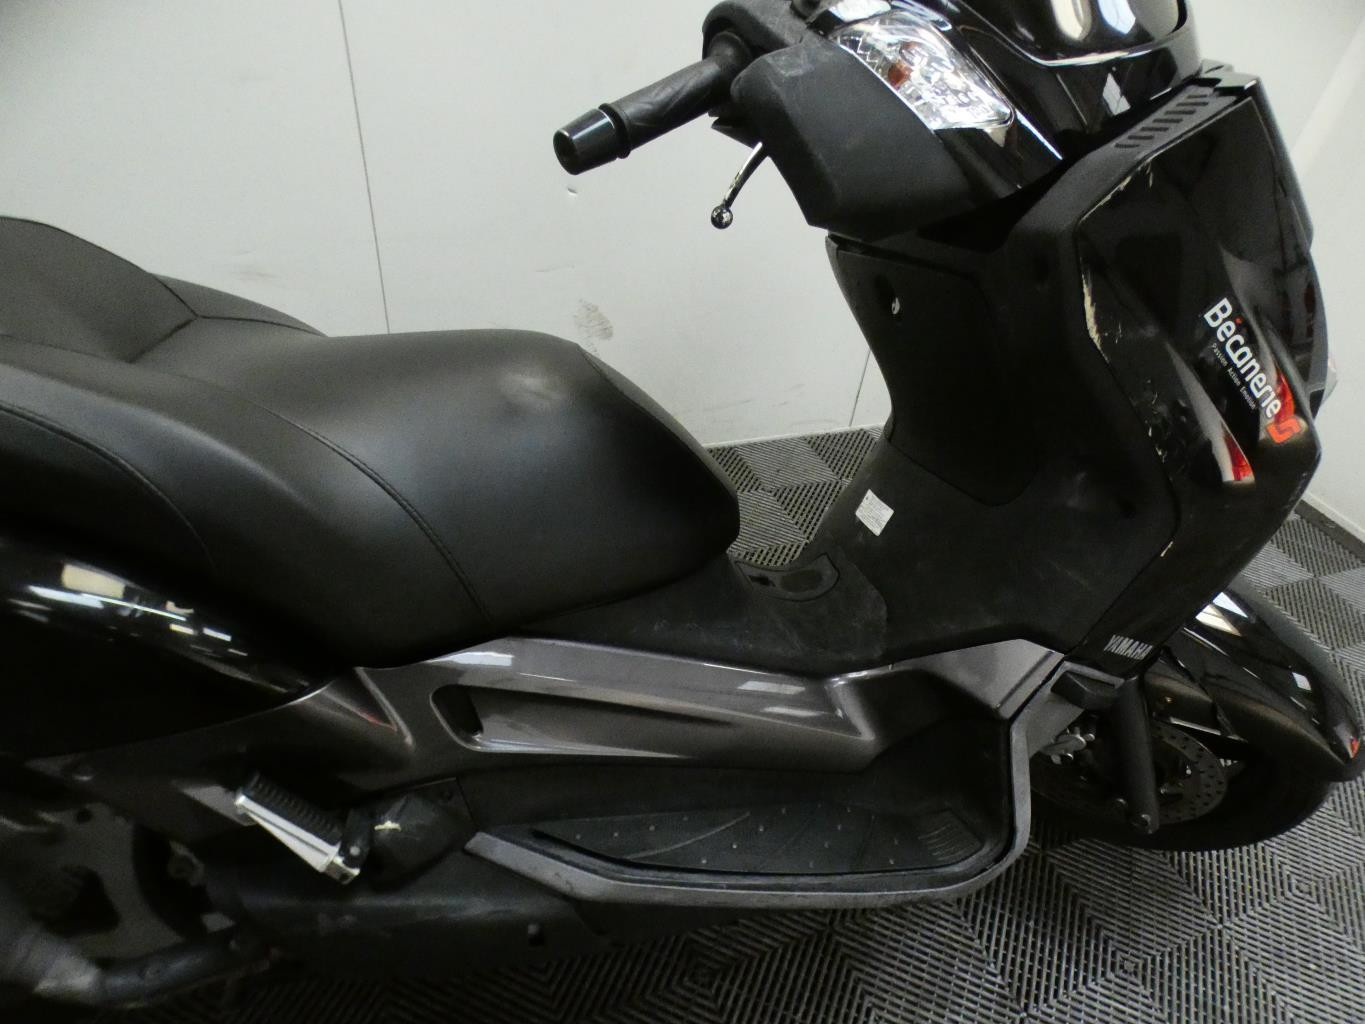 Fiche technique du scooter Yamaha X-Max 125cc 4T (2006-2009) 